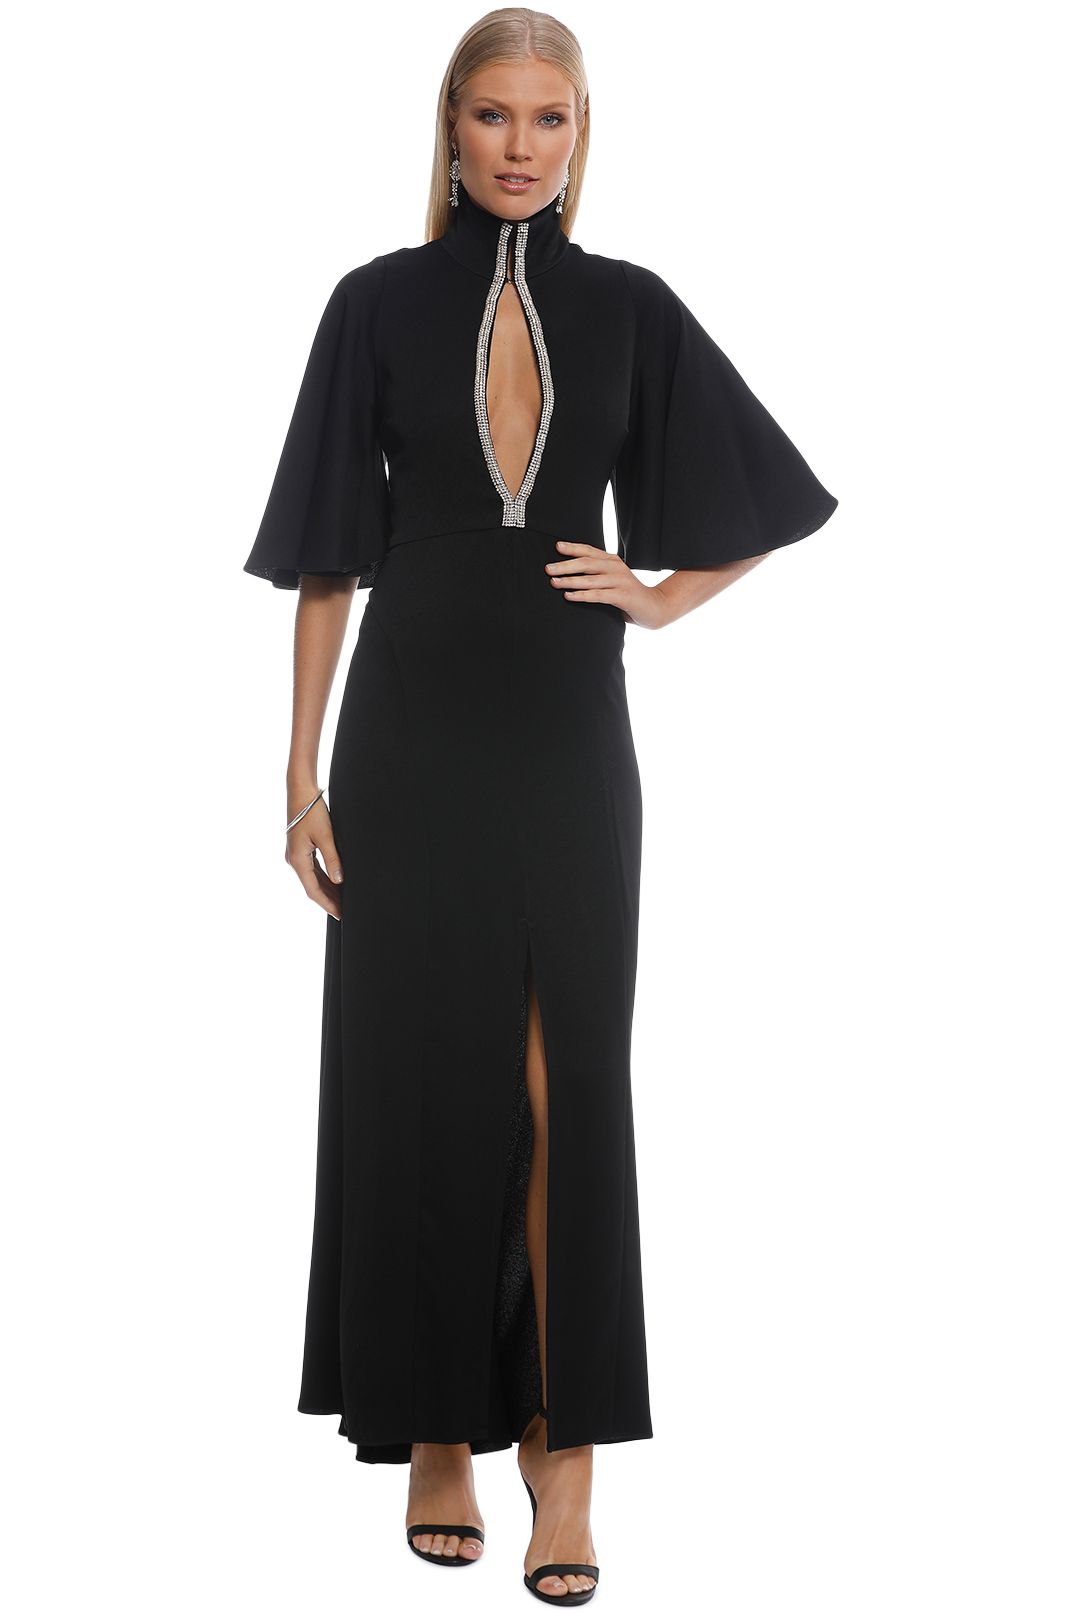 Ellery - Mae Funnel Neck Dress - Black  - Front